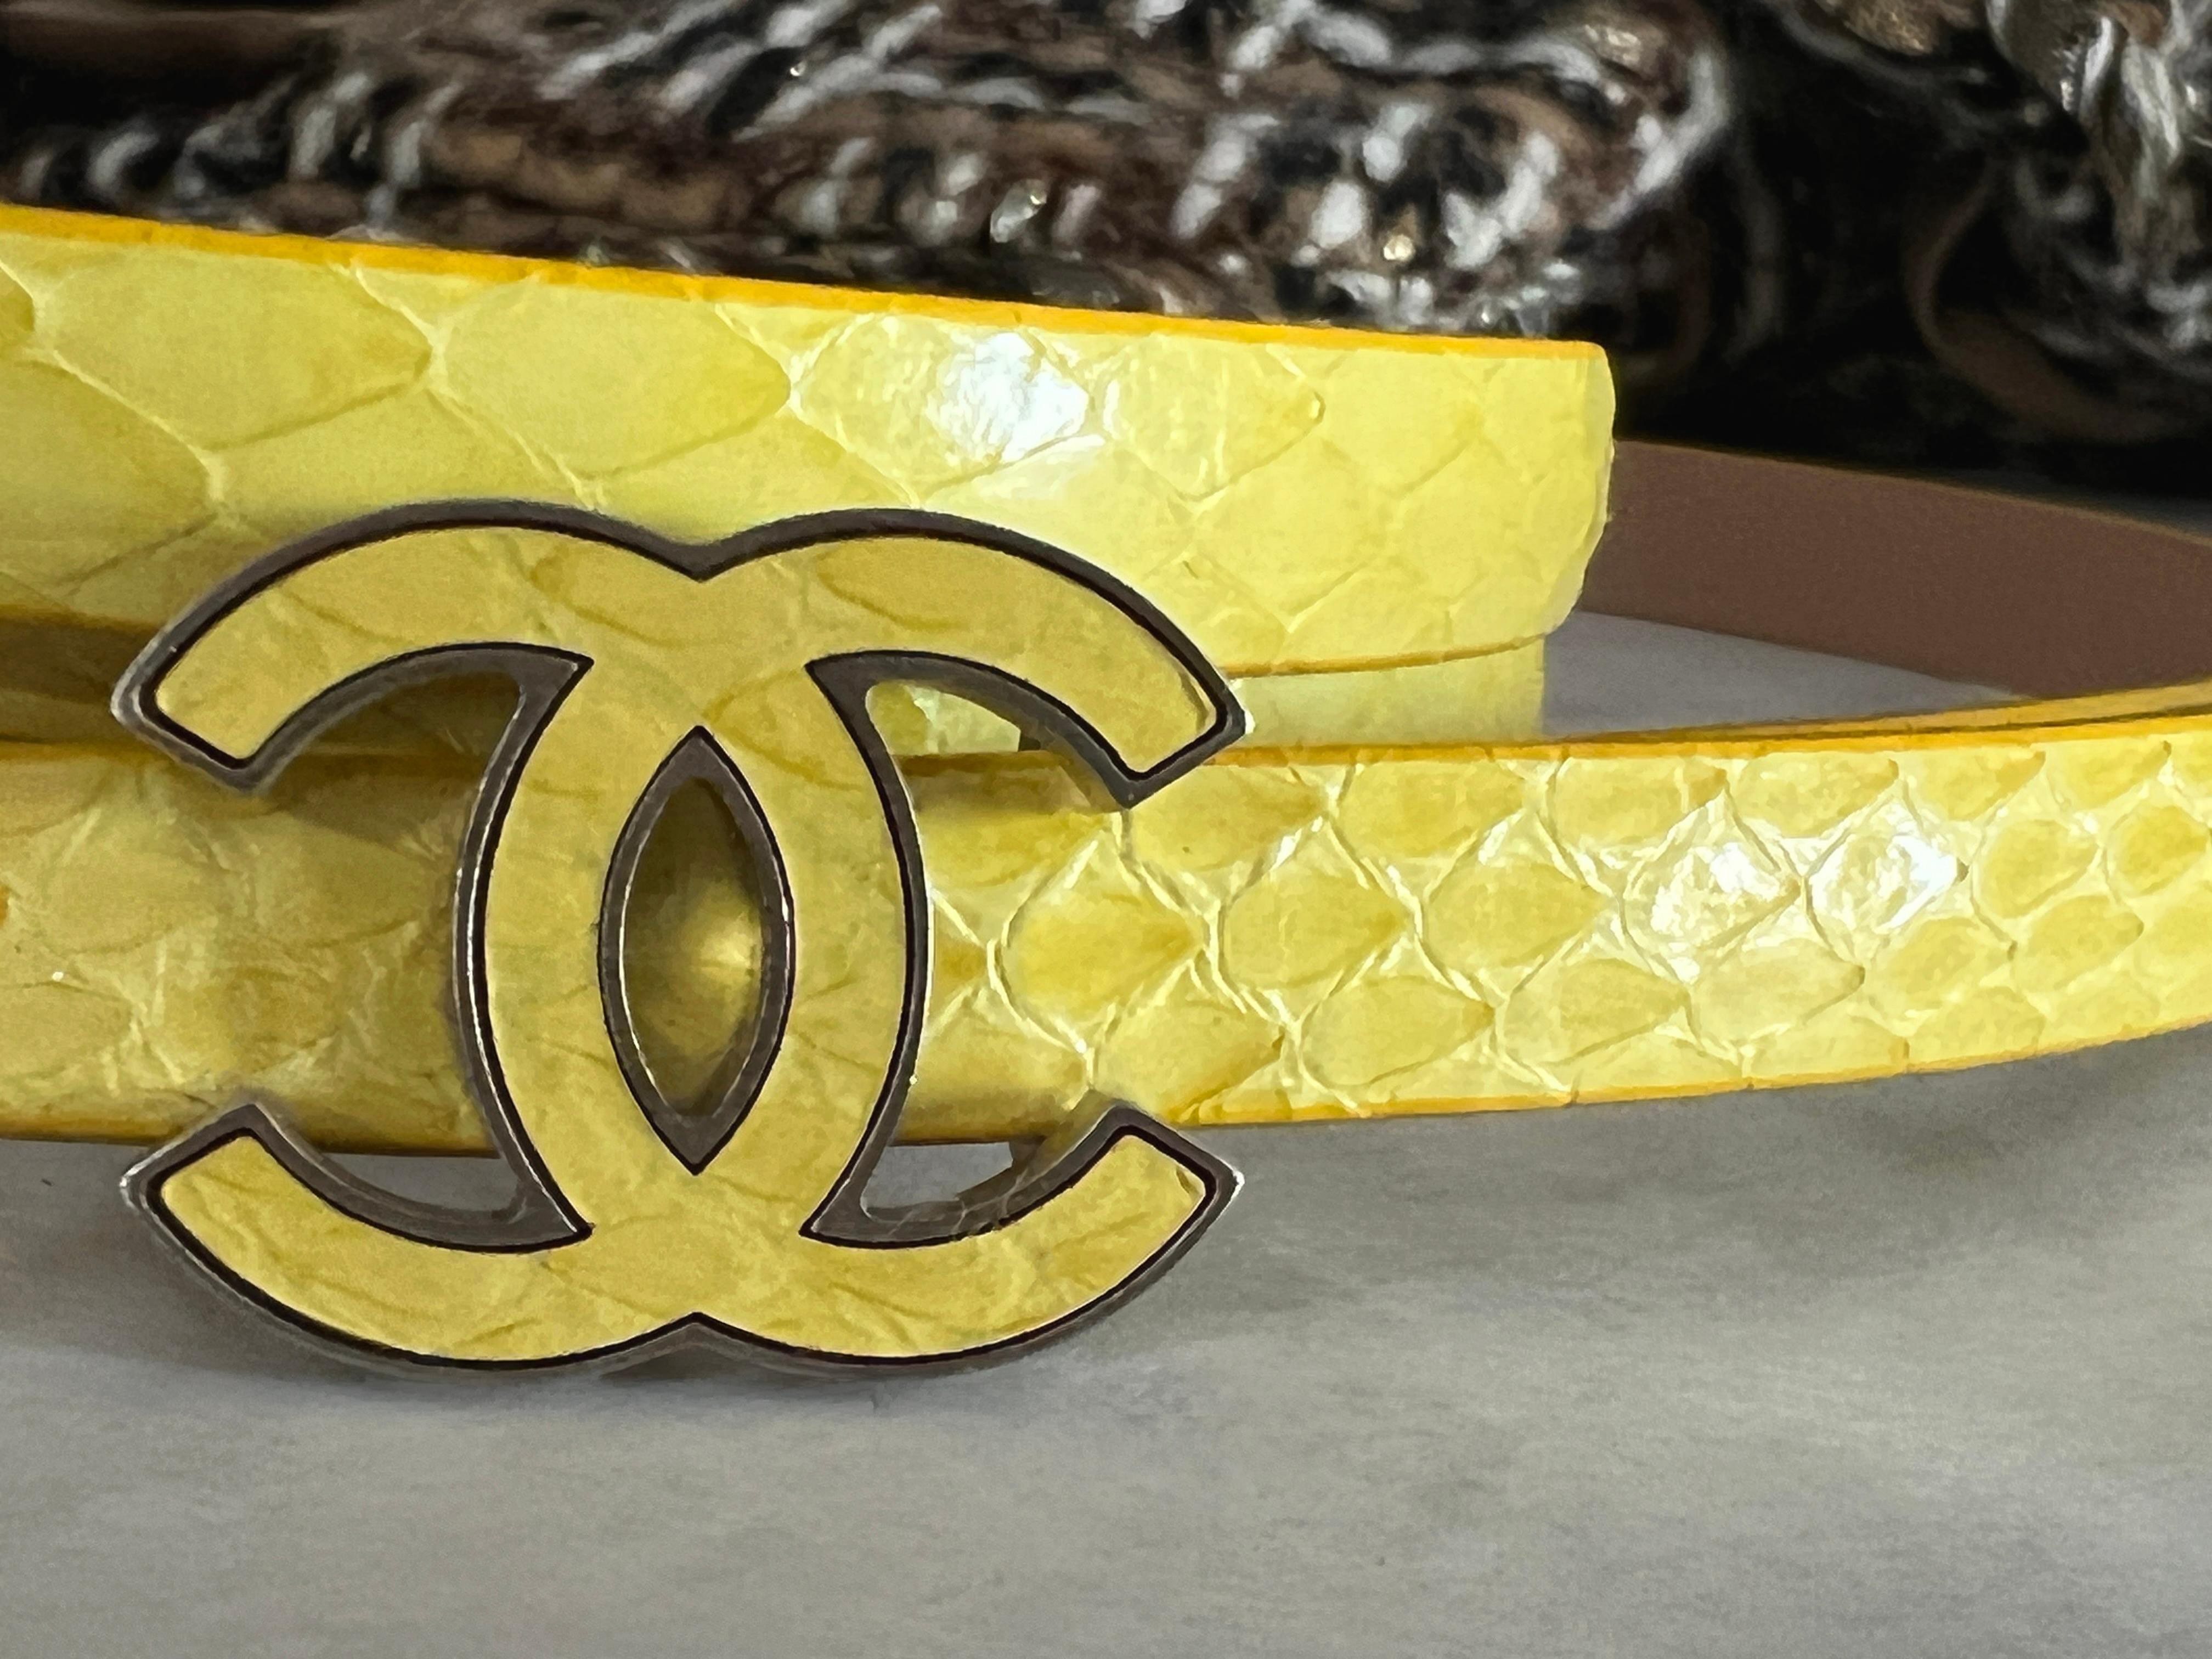 Chanel Gürtel aus gelbem Python mit CC-Schnalle.
Länge 95cm, ungetragen aufbewahrt.